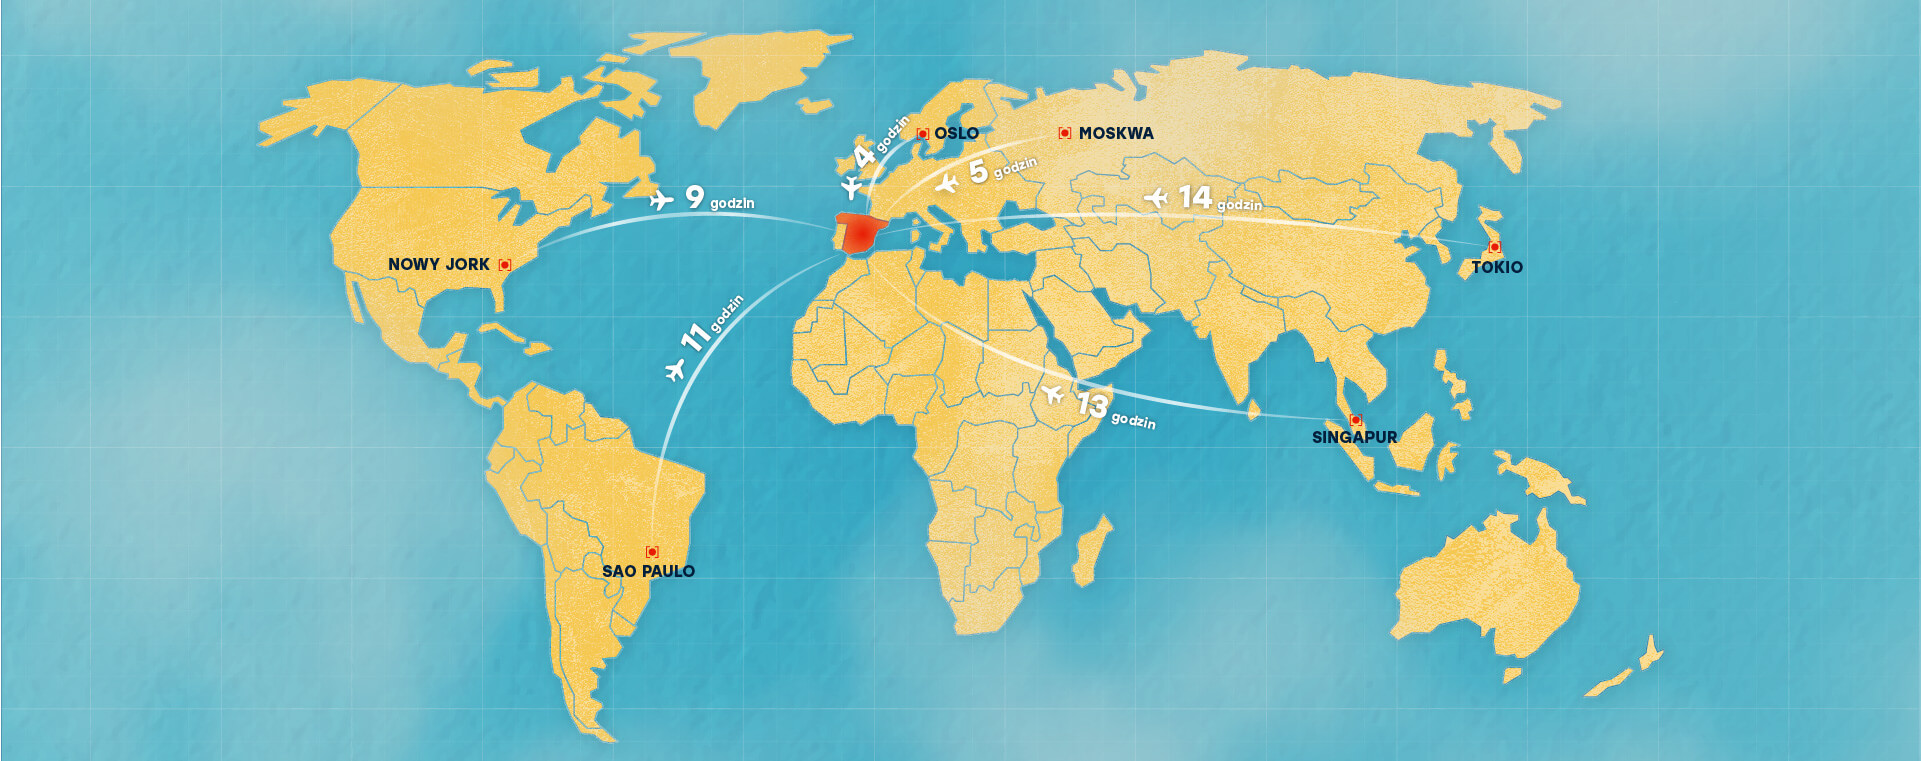 Mapa świata i odległości czasowe w przypadku lotu samolotem